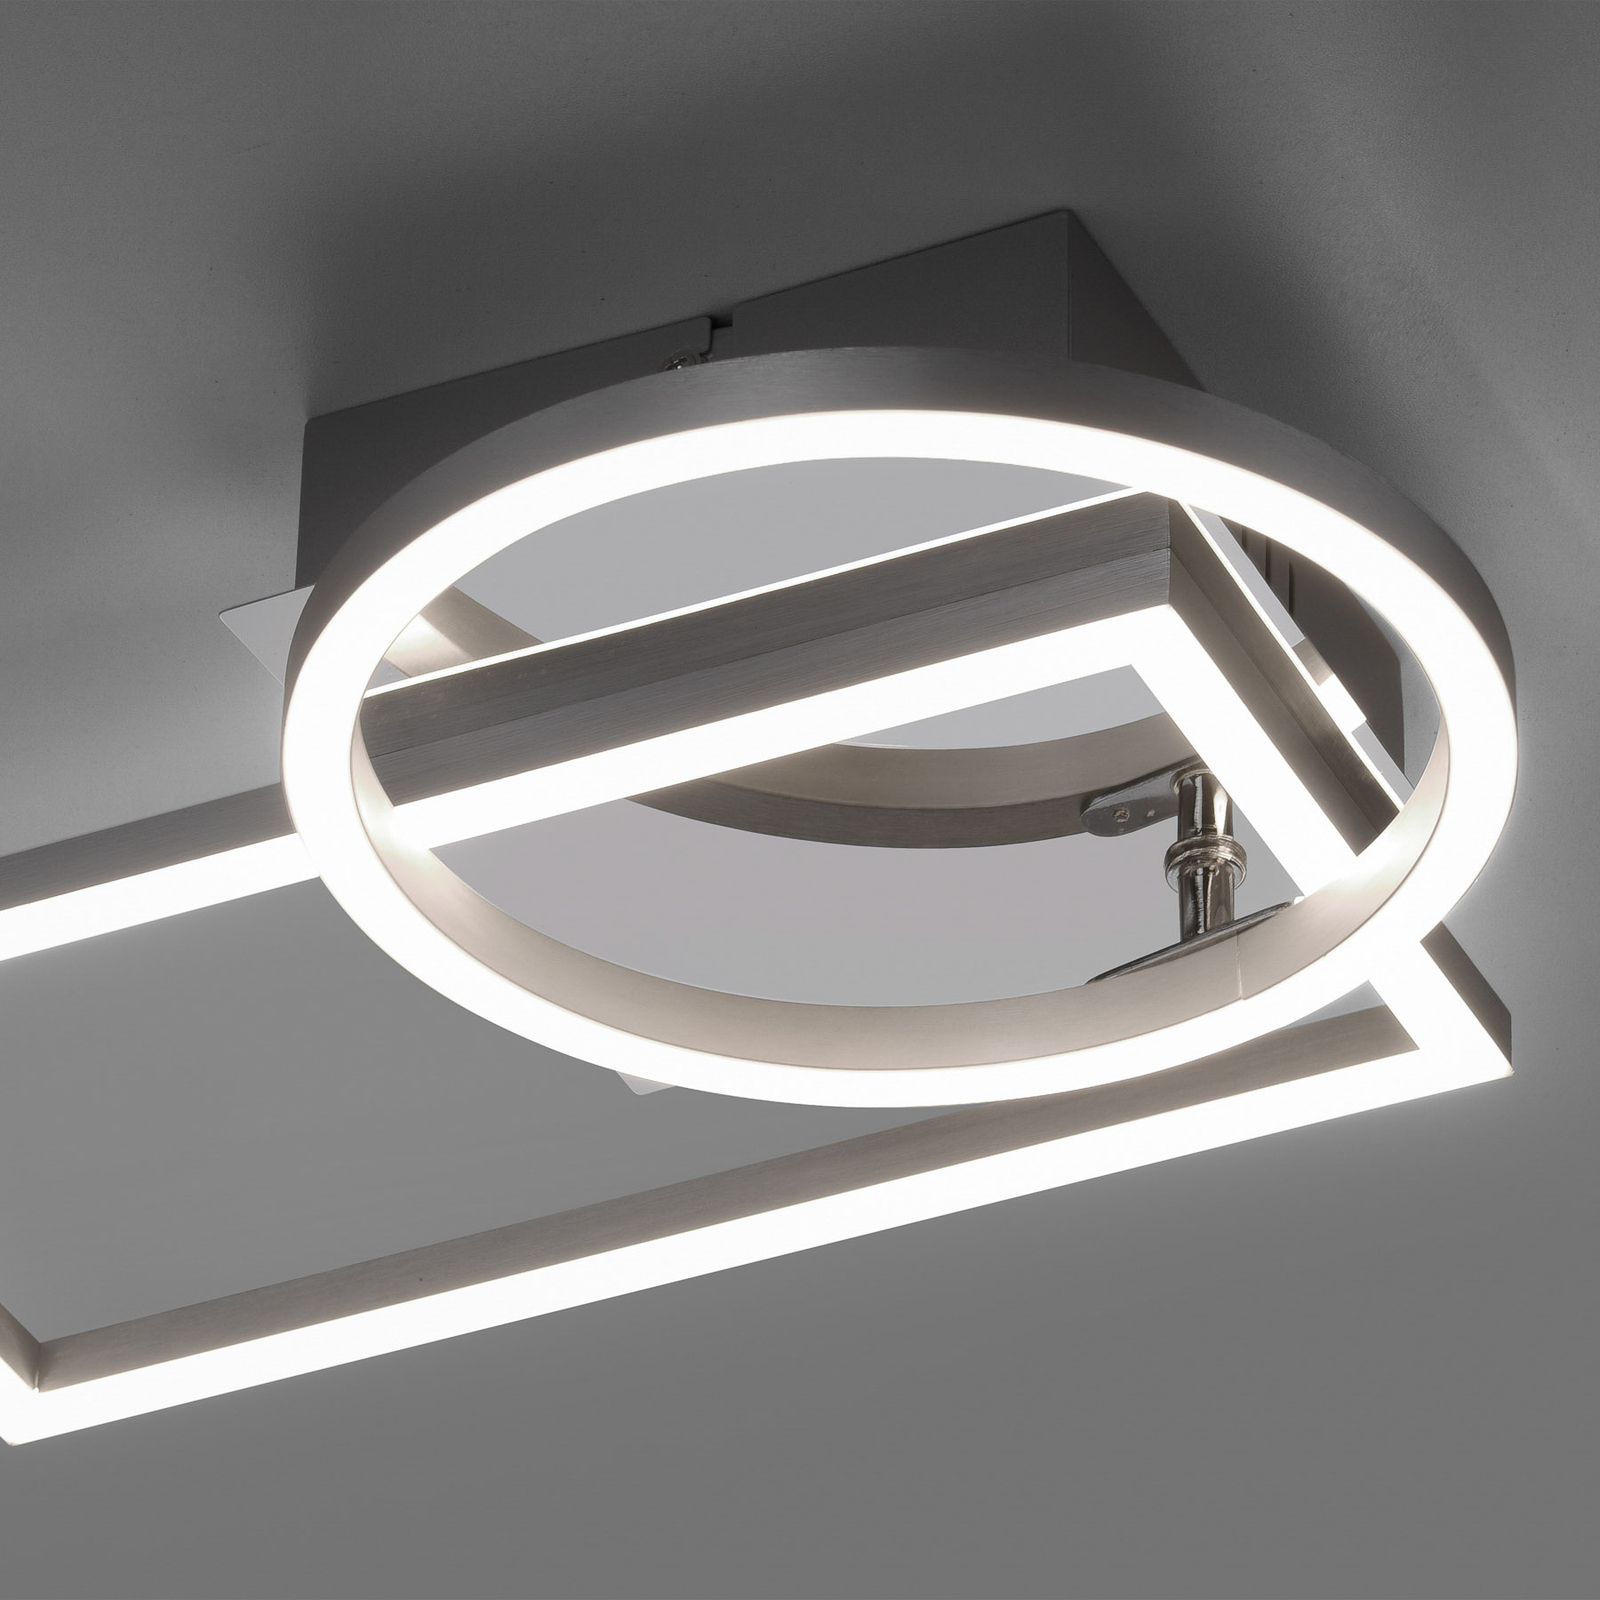 LED ceiling light Iven, steel, 37x26cm